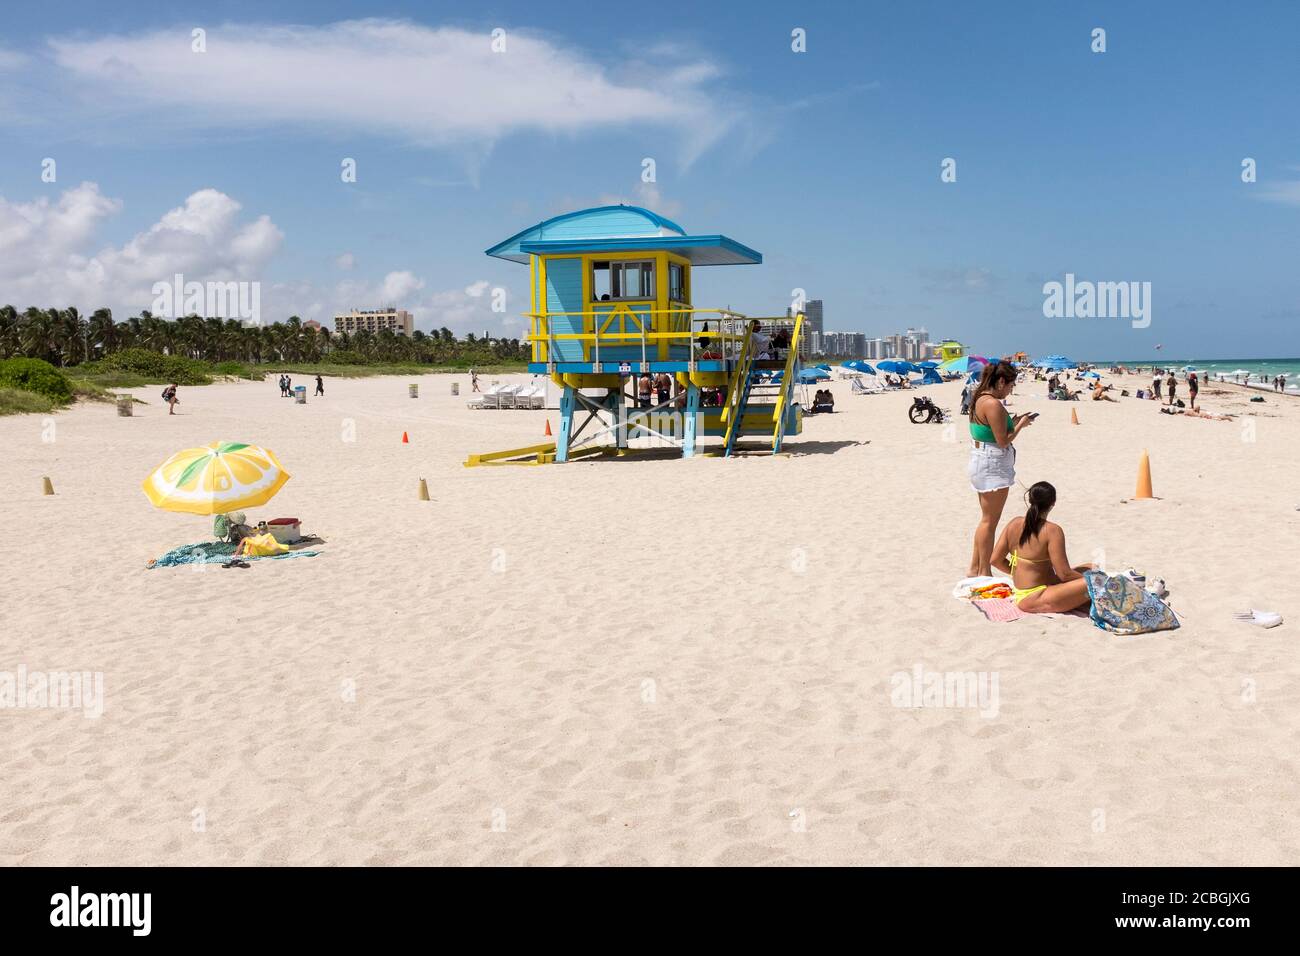 Les gens qui apprécient une journée sur la plage avec un maître nageur se tiennent en arrière-plan, à South Beach, Miami Beach, Floride, États-Unis. Banque D'Images